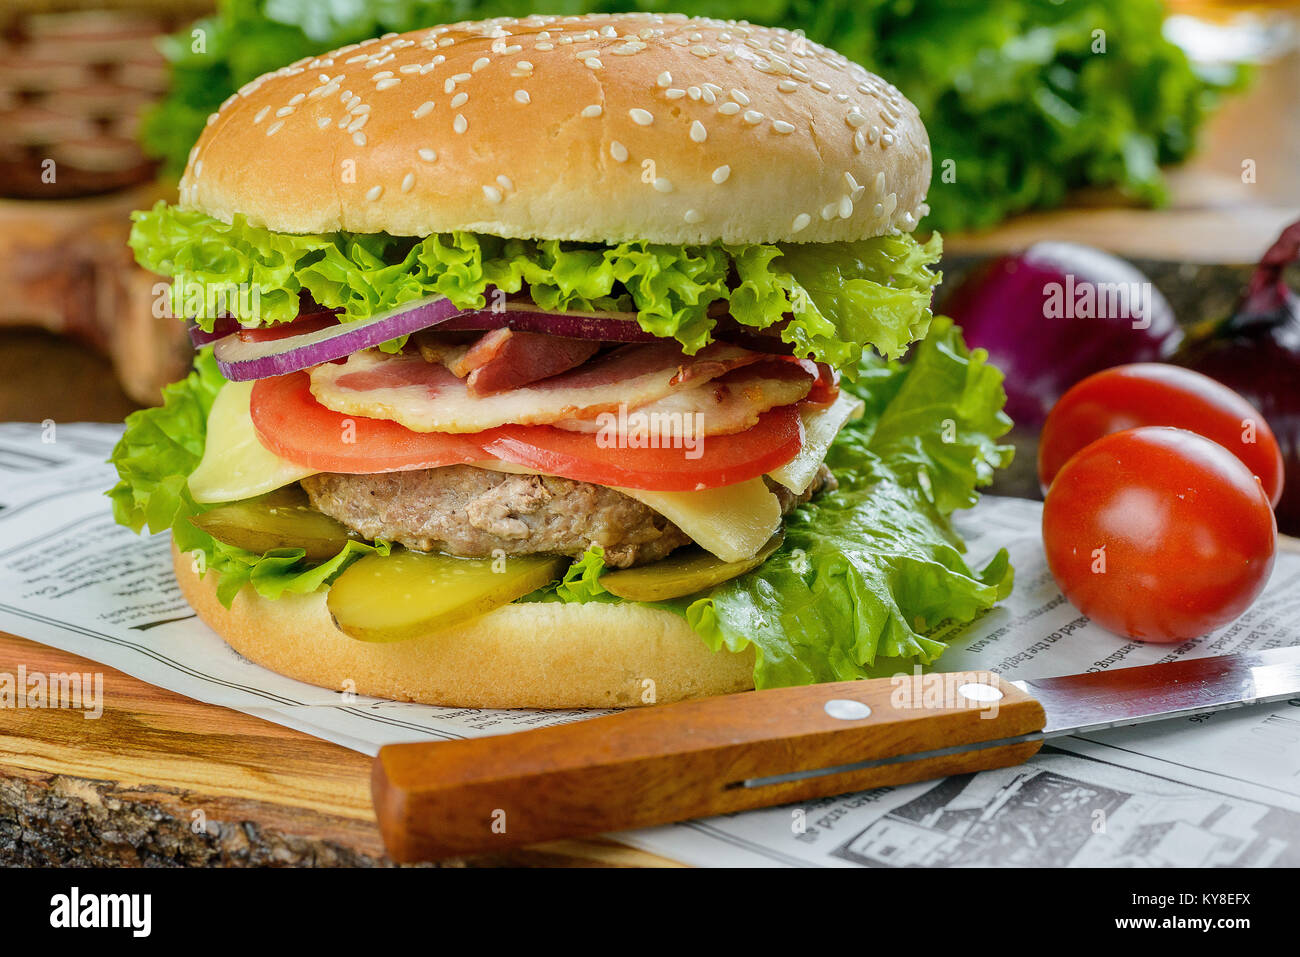 Grand journal sur Burger Banque D'Images